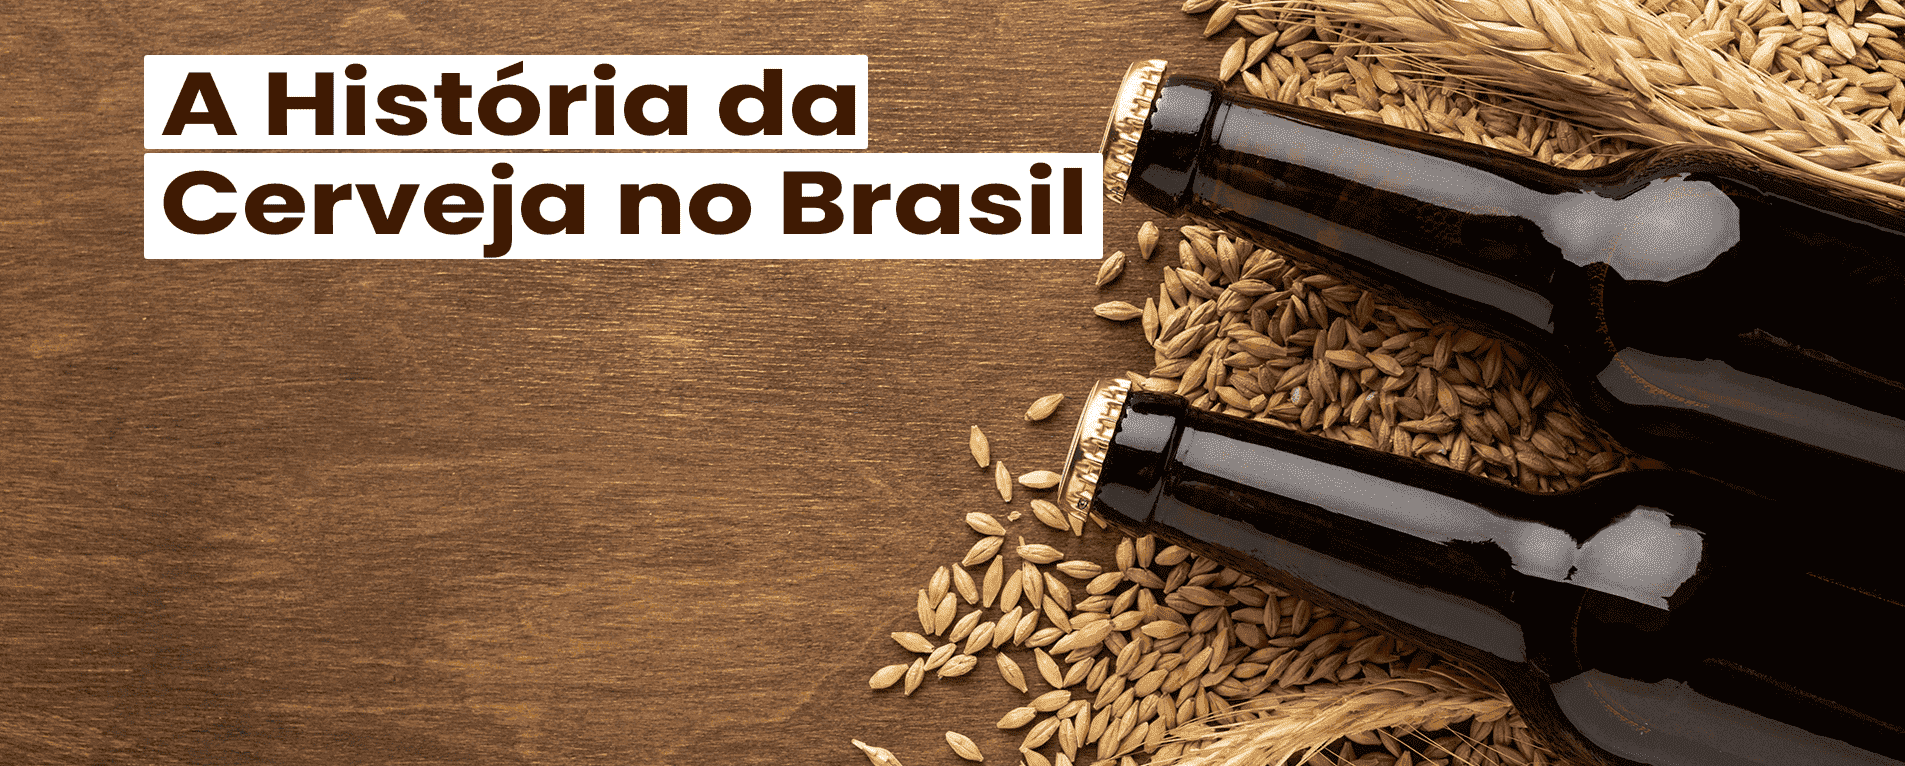 7 Fatos e Curiosidades Sobre a História da Cerveja no Brasil